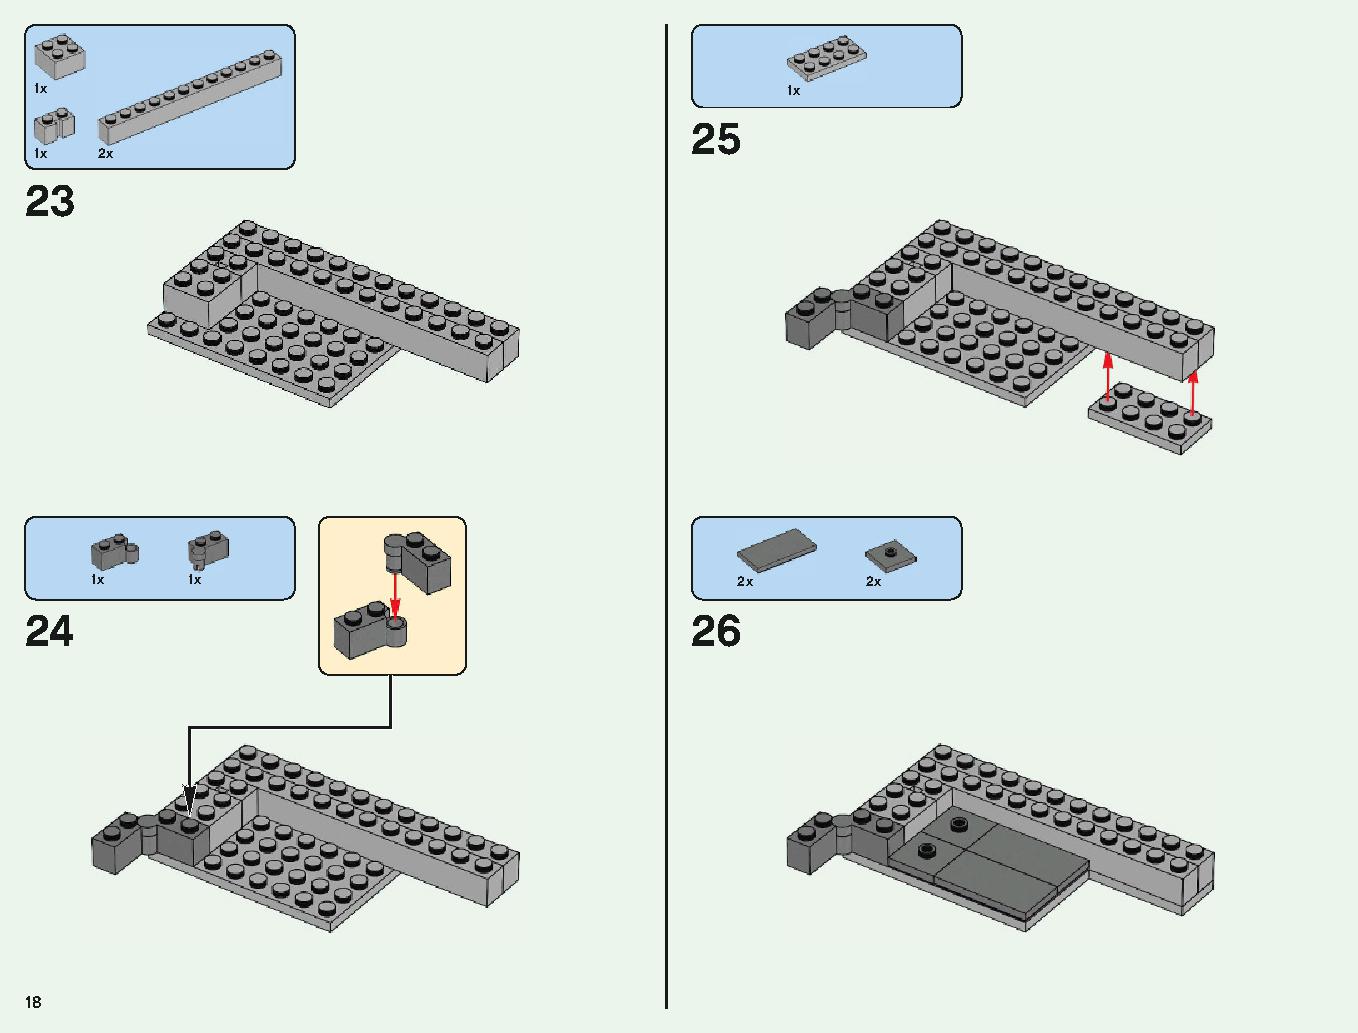 ベッドロックの冒険 21147 レゴの商品情報 レゴの説明書・組立方法 18 page